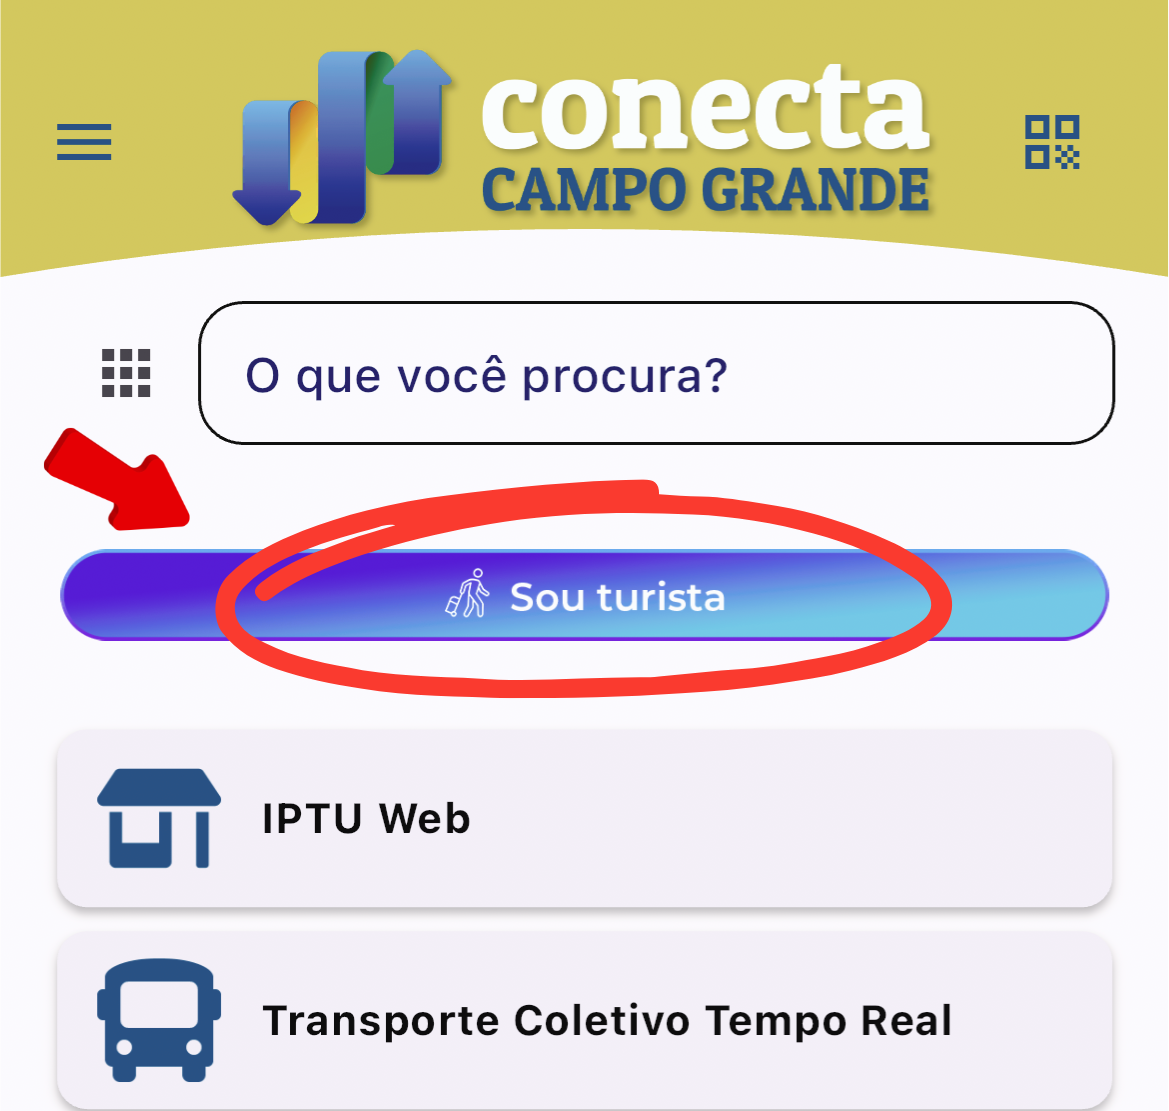 BOTAO SOU TURISTA e1711542212971 Prefeitura amplia funcionalidades do APP Conecta Campo Grande com botão exclusivo para turistas